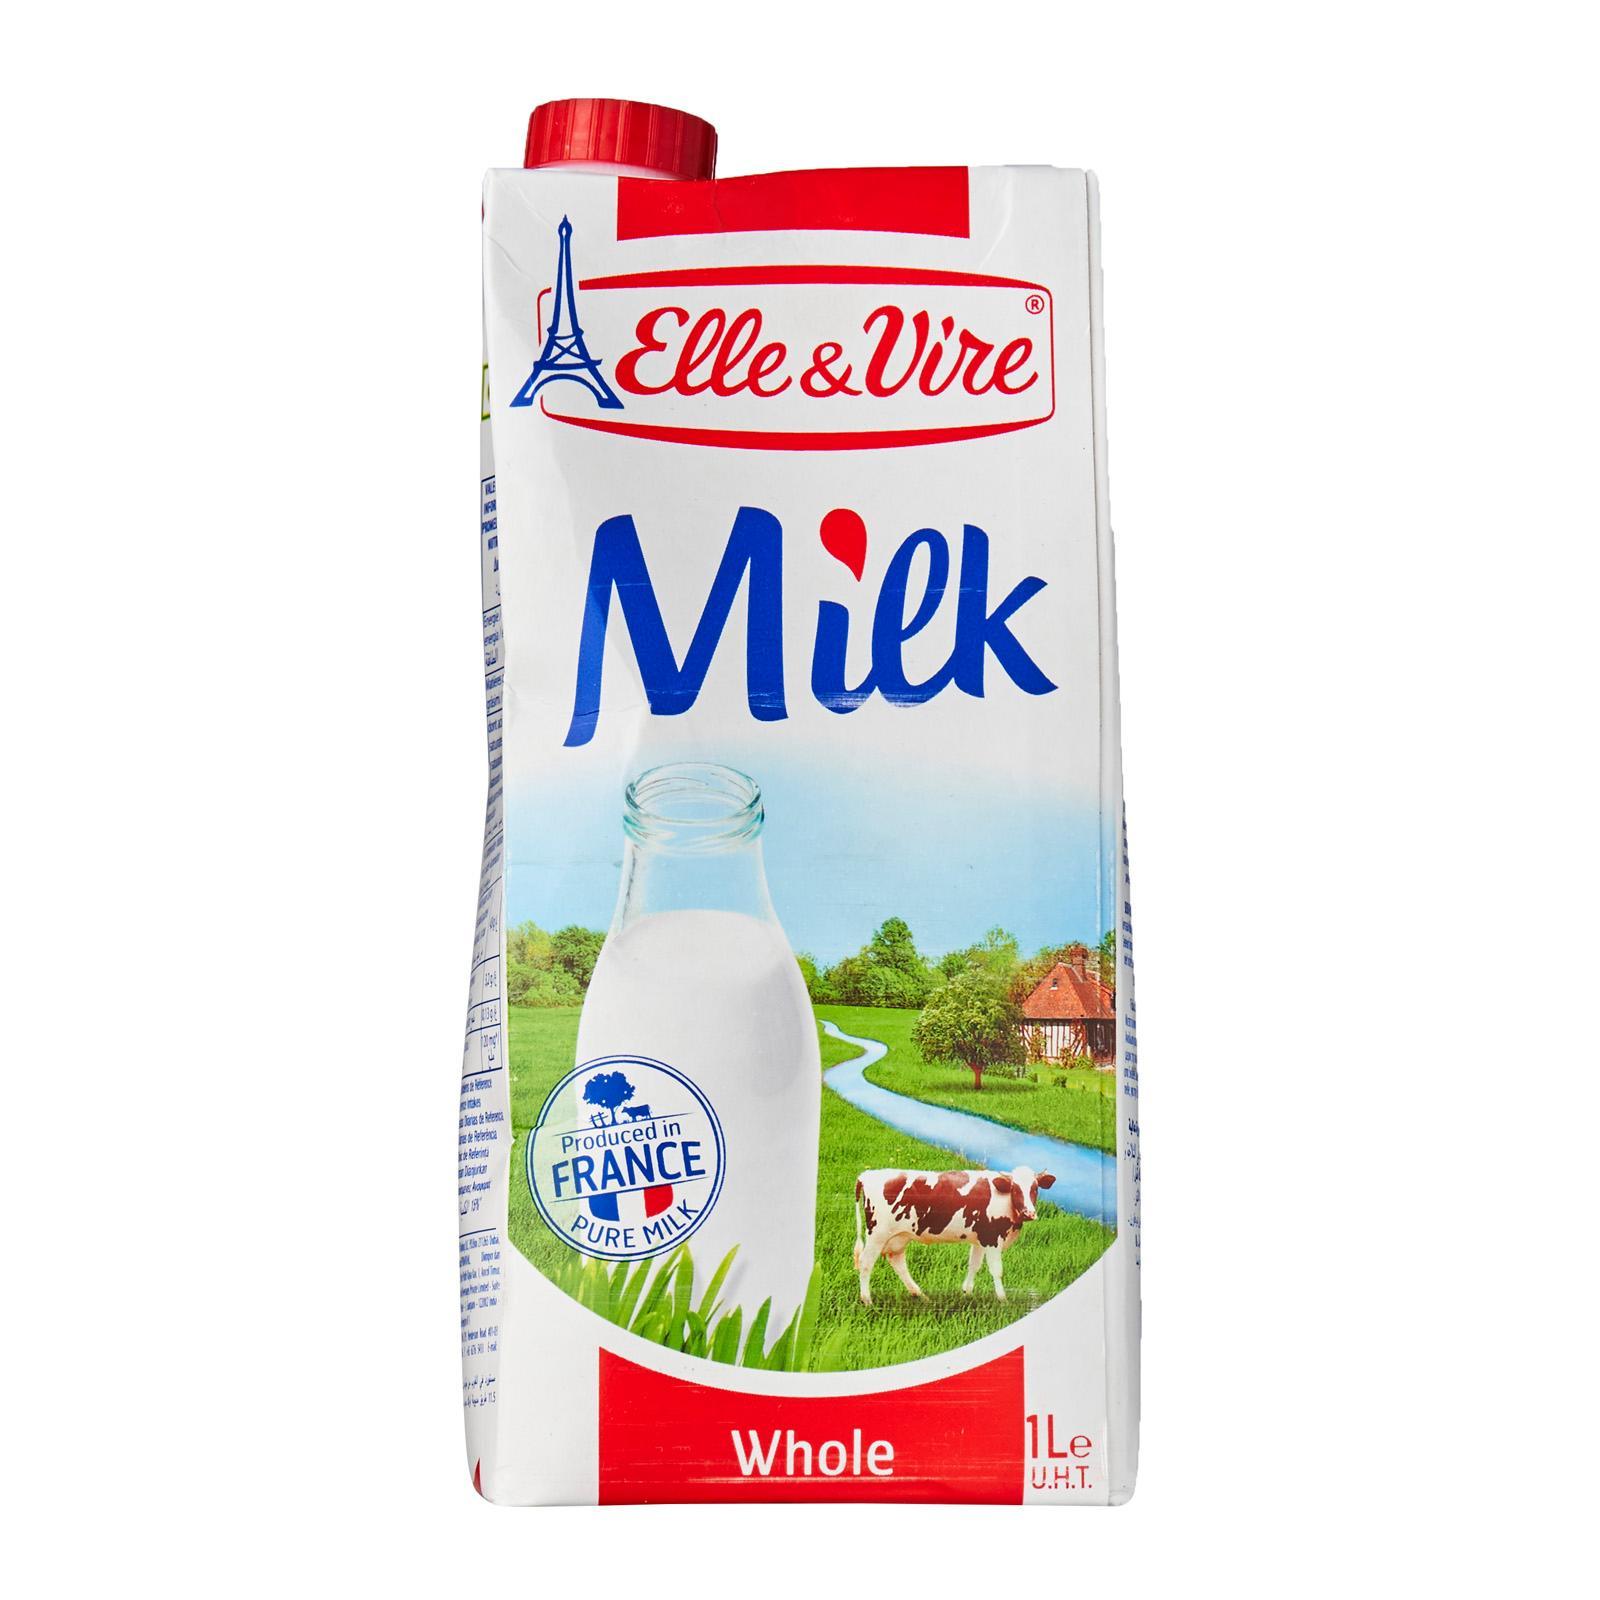 Elle & Vire Whole Milk